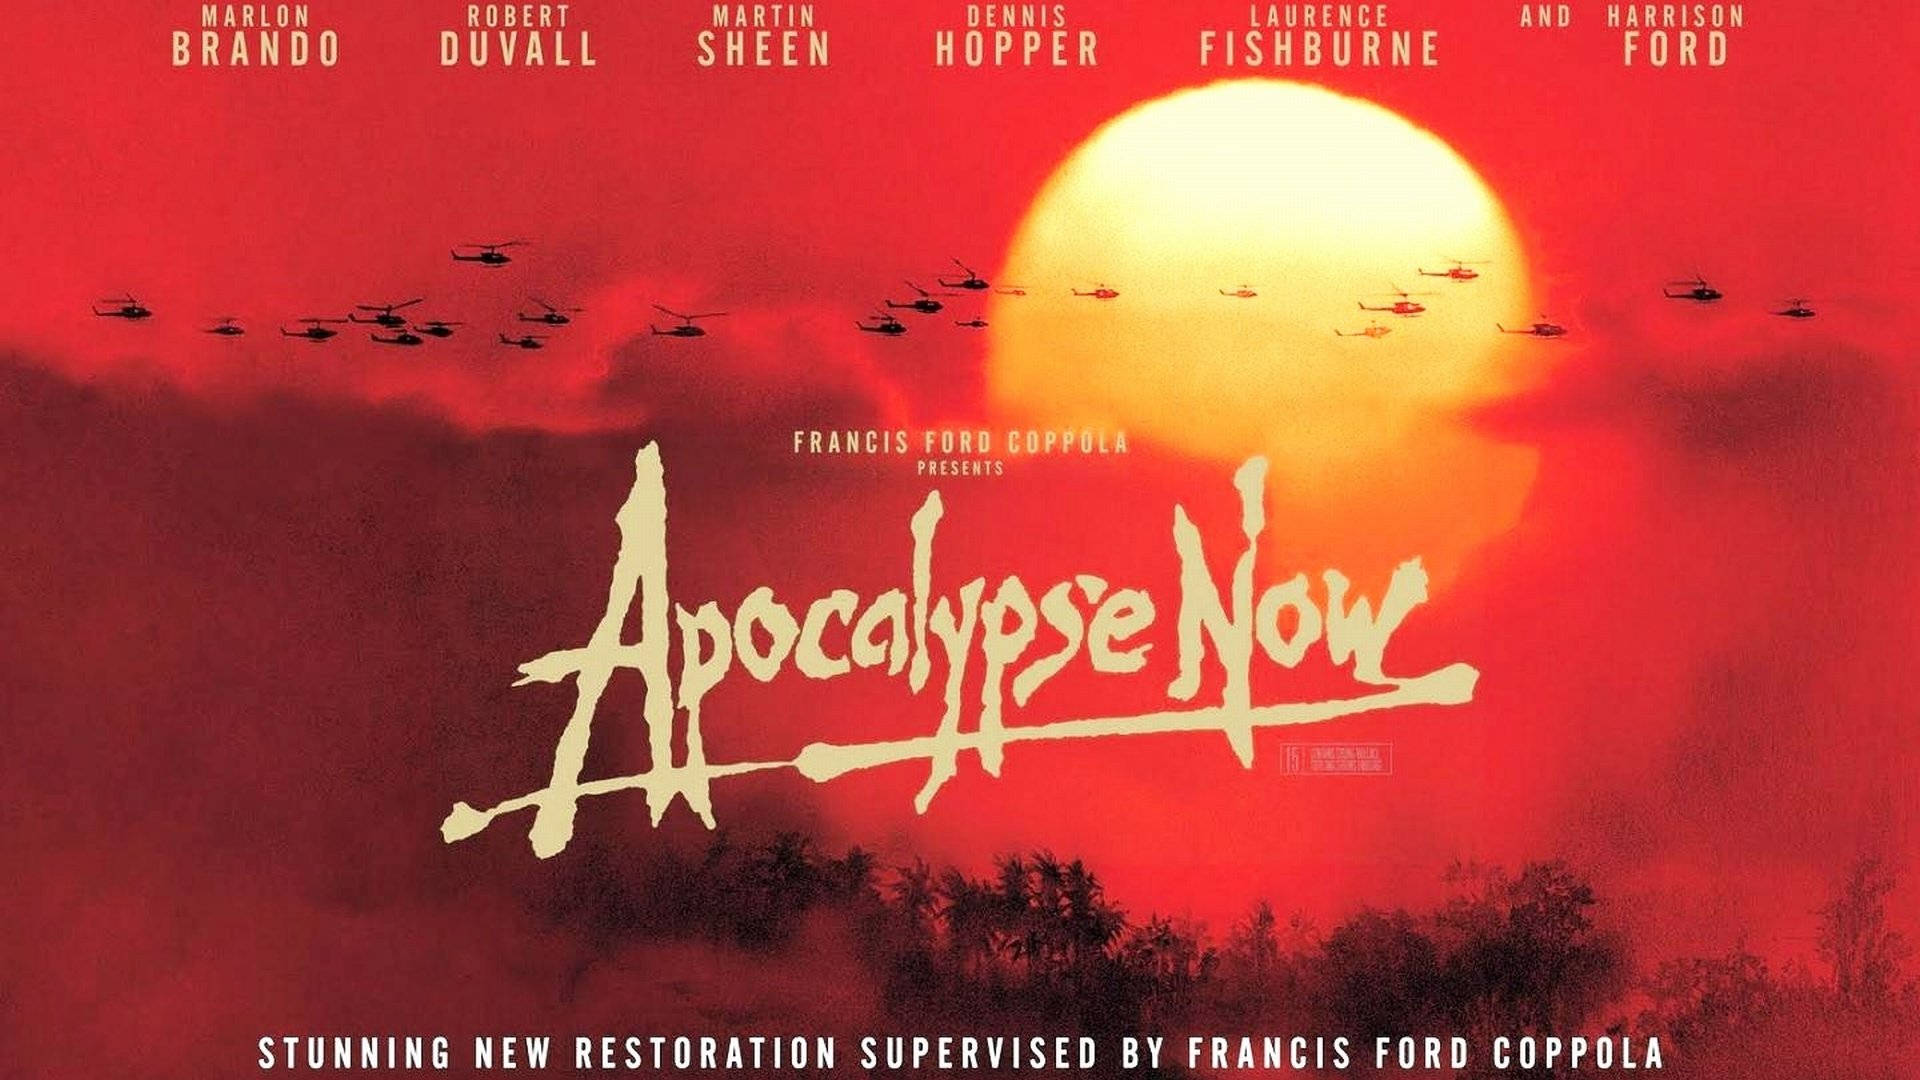 L'intensadrammaticità Della Guerra Catturata Nella Scena Iconica Di Apocalypse Now. Sfondo